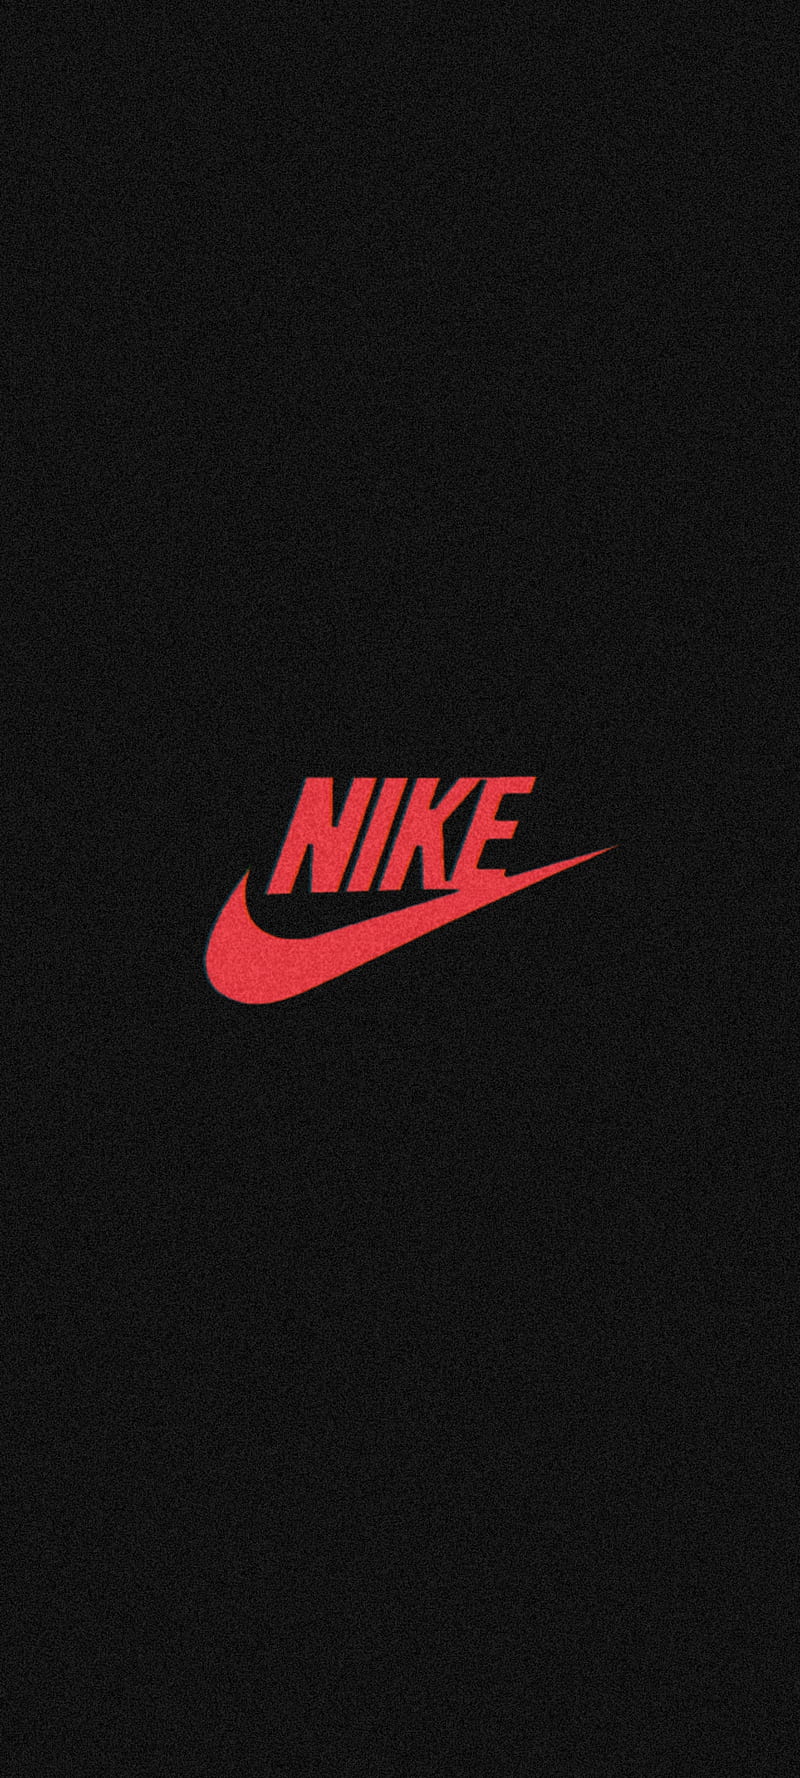 Nike Logo, Nike air, Supreme, Air Jordan, black, Jordan, brand Nike, HD ...